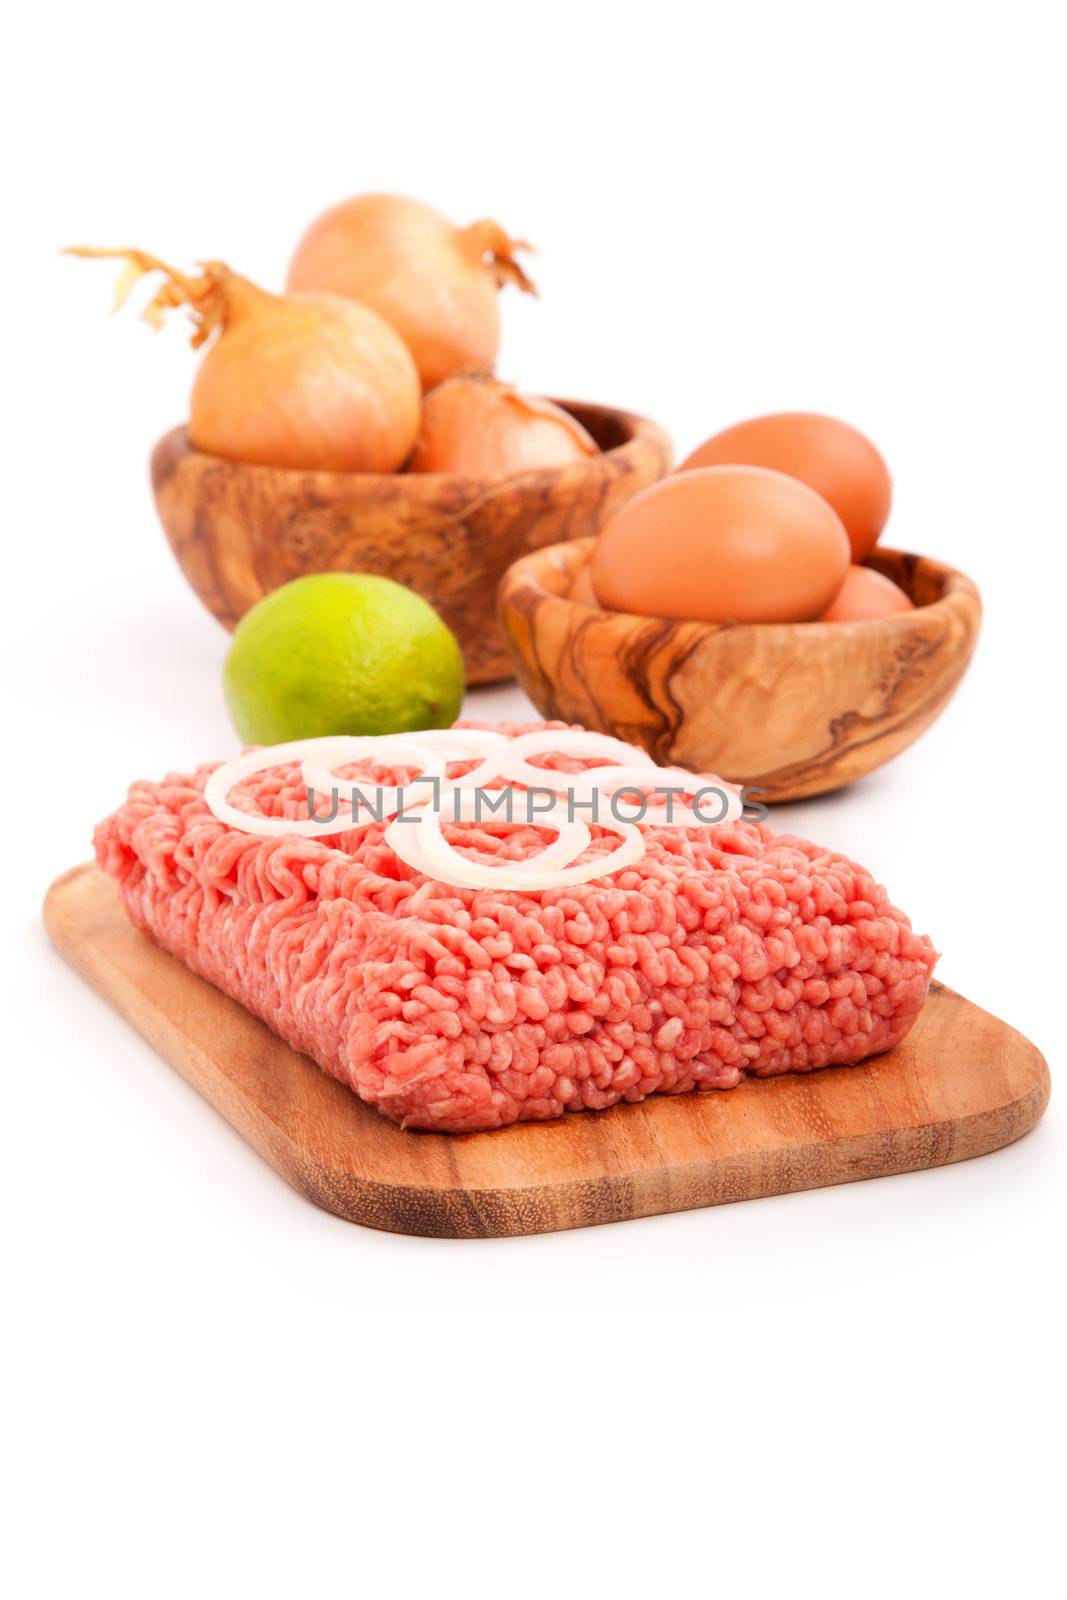 Raw minced meat by motorolka